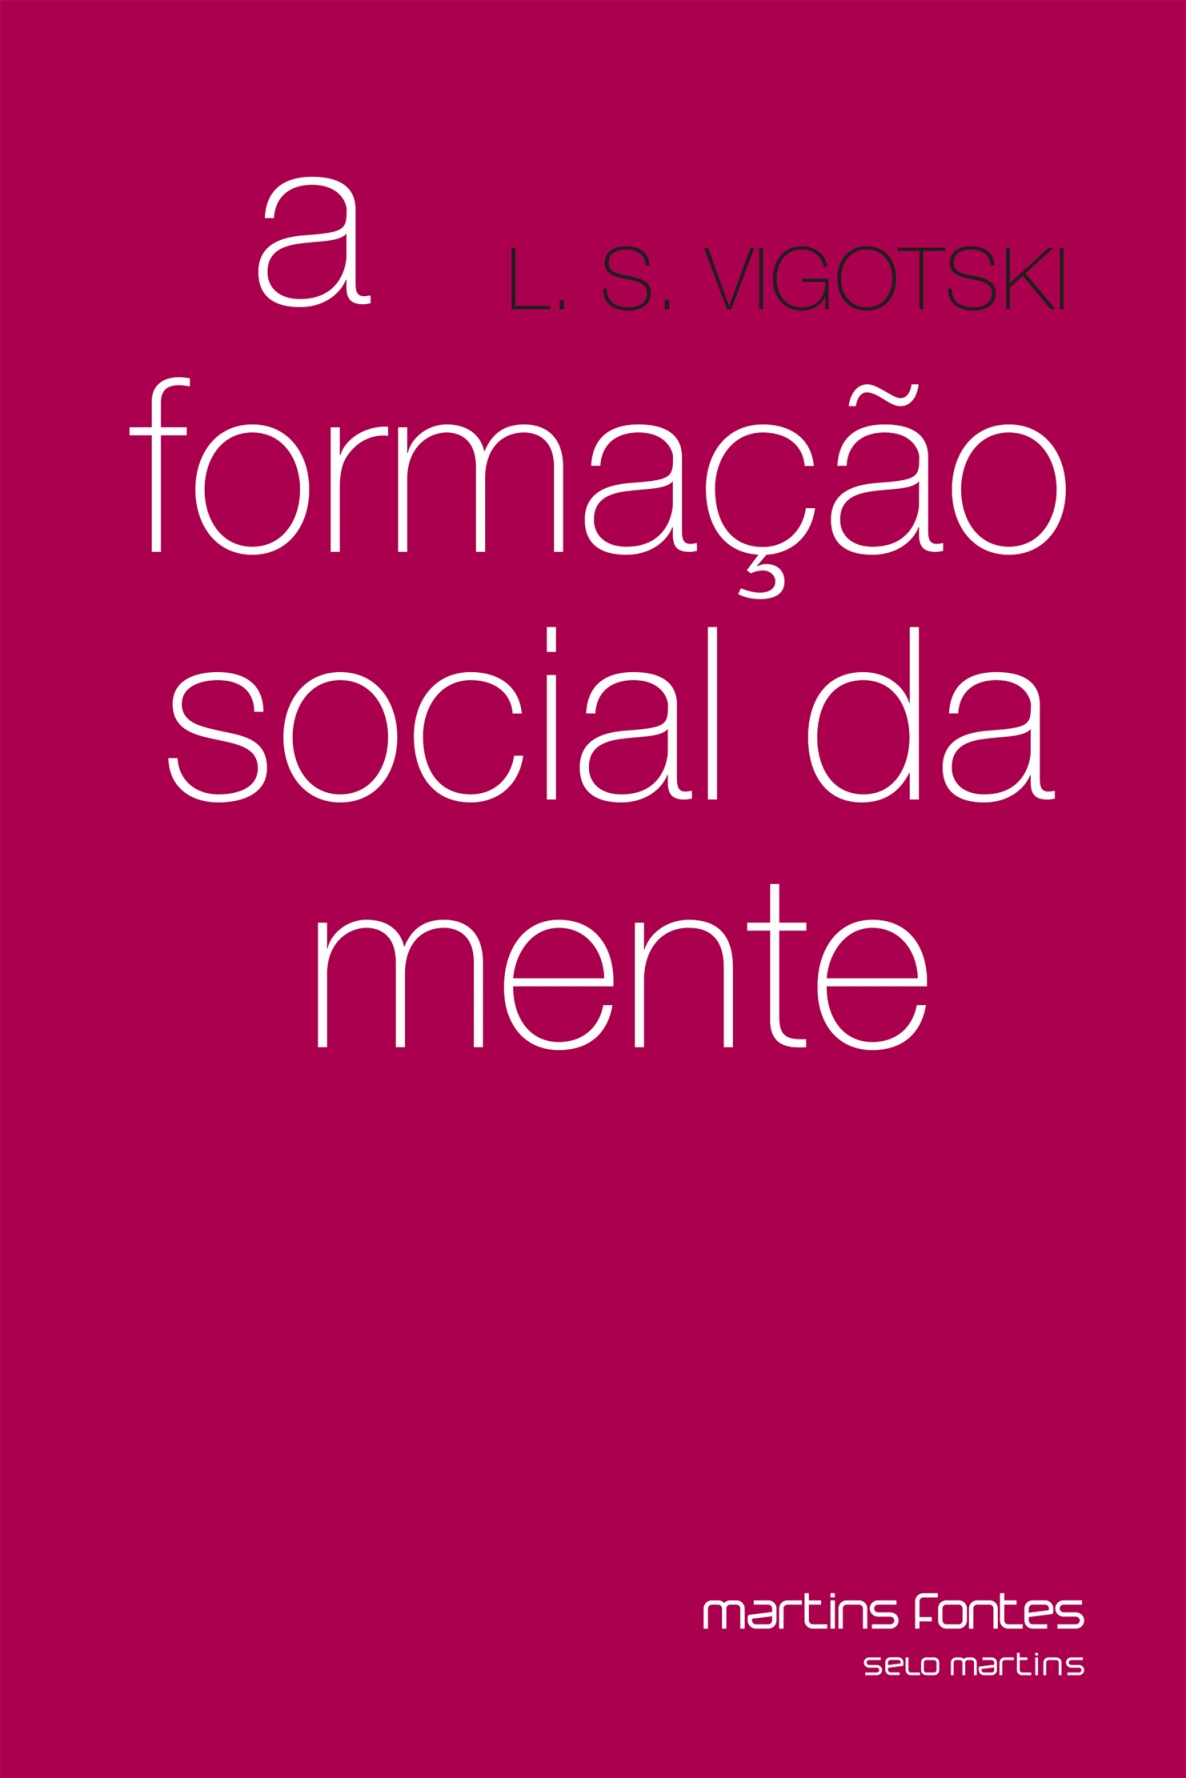 Formação social da mente, A  - Martins Fontes